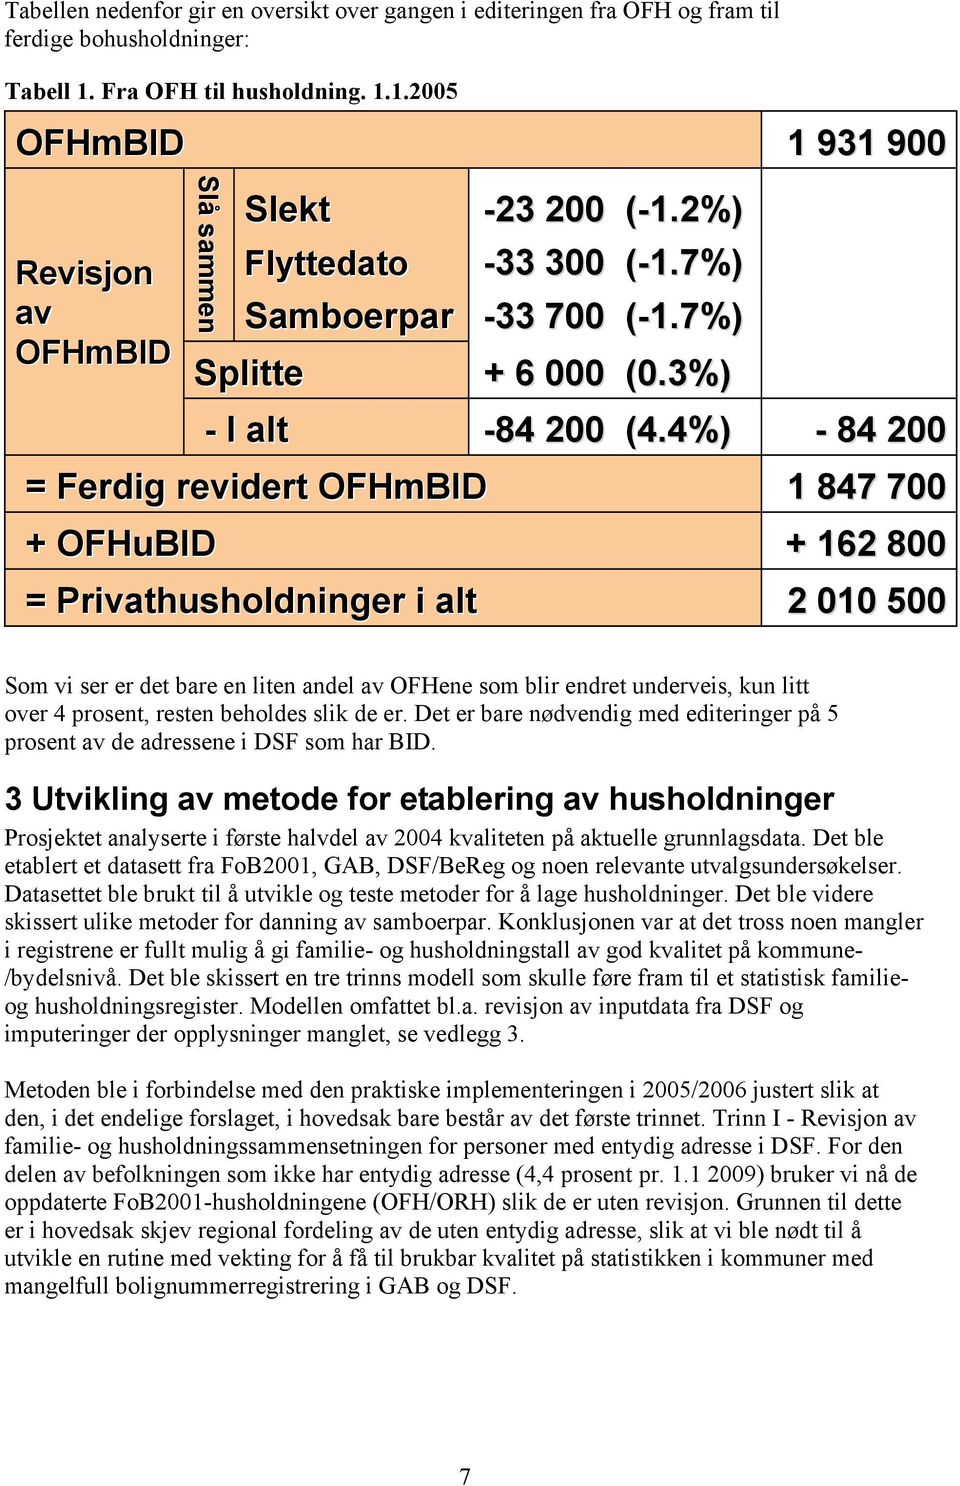 1.2005 OFHmBID Revisjon av OFHmBID Slå sammen Slekt -23 200 Flyttedato -33 300 Samboerpar -33 700 Splitte + 6 000 - I alt -84 200 = Ferdig revidert OFHmBID + OFHuBID = Privathusholdninger i alt (-1.